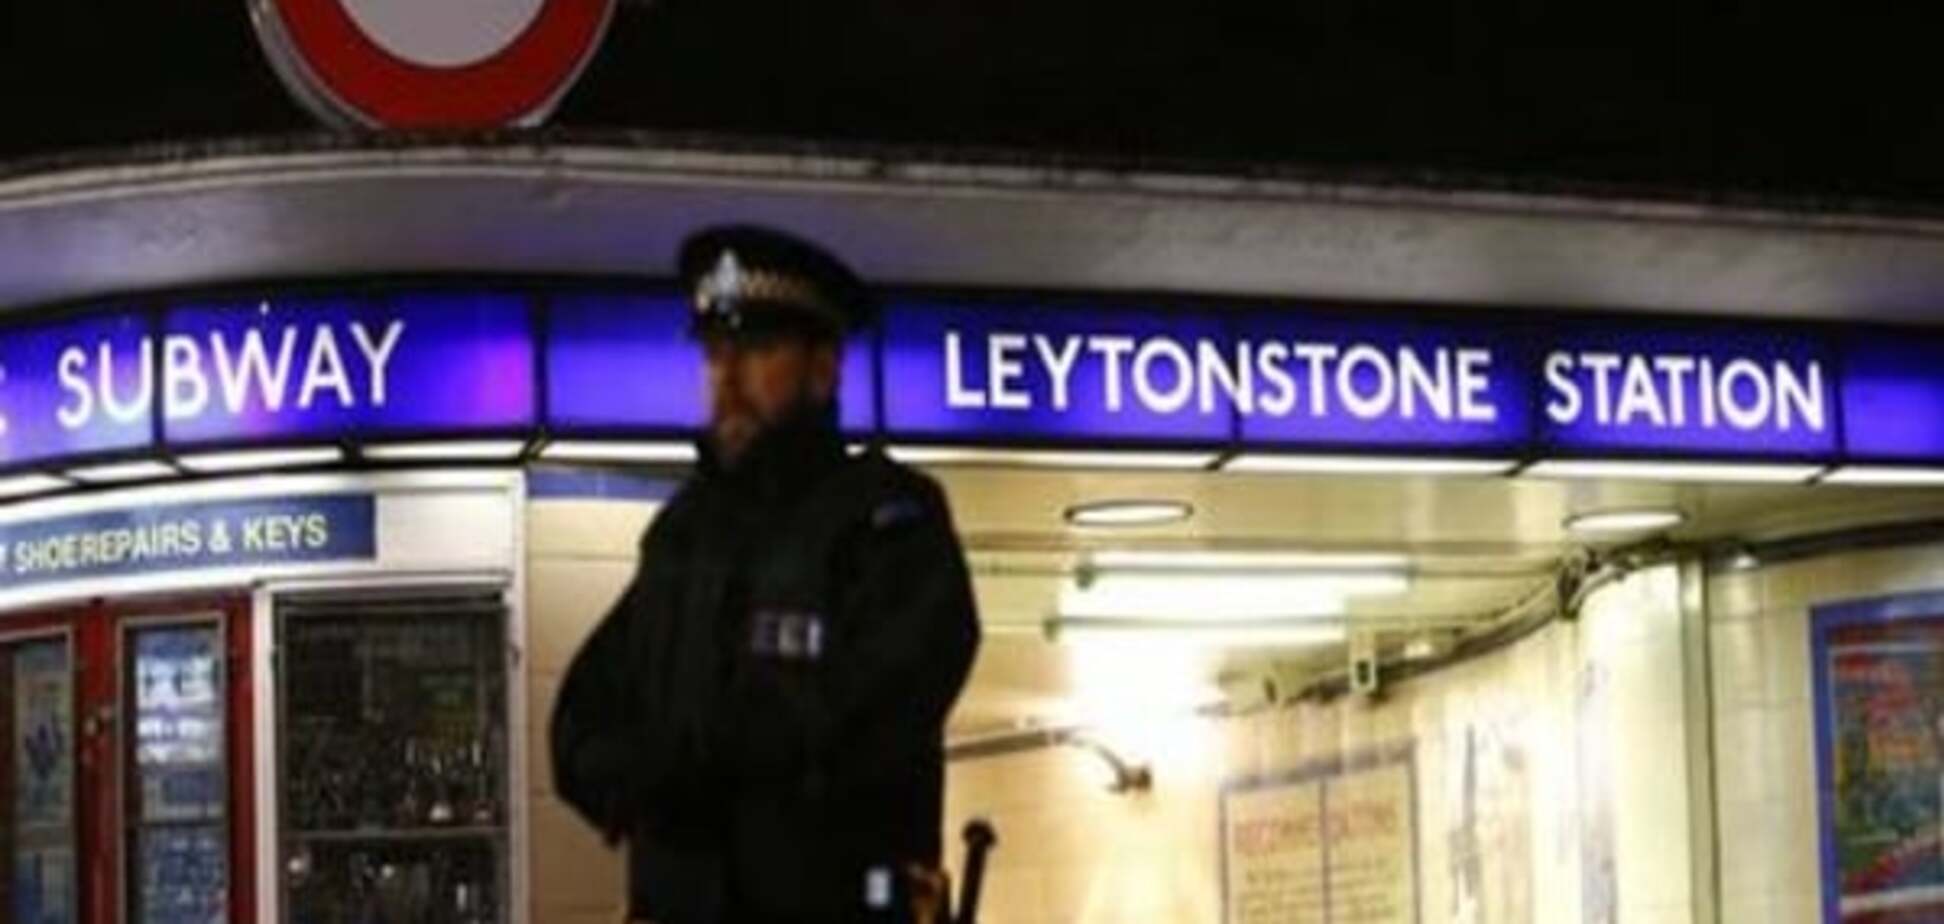 Напад у лондонському метро розцінюють як теракт